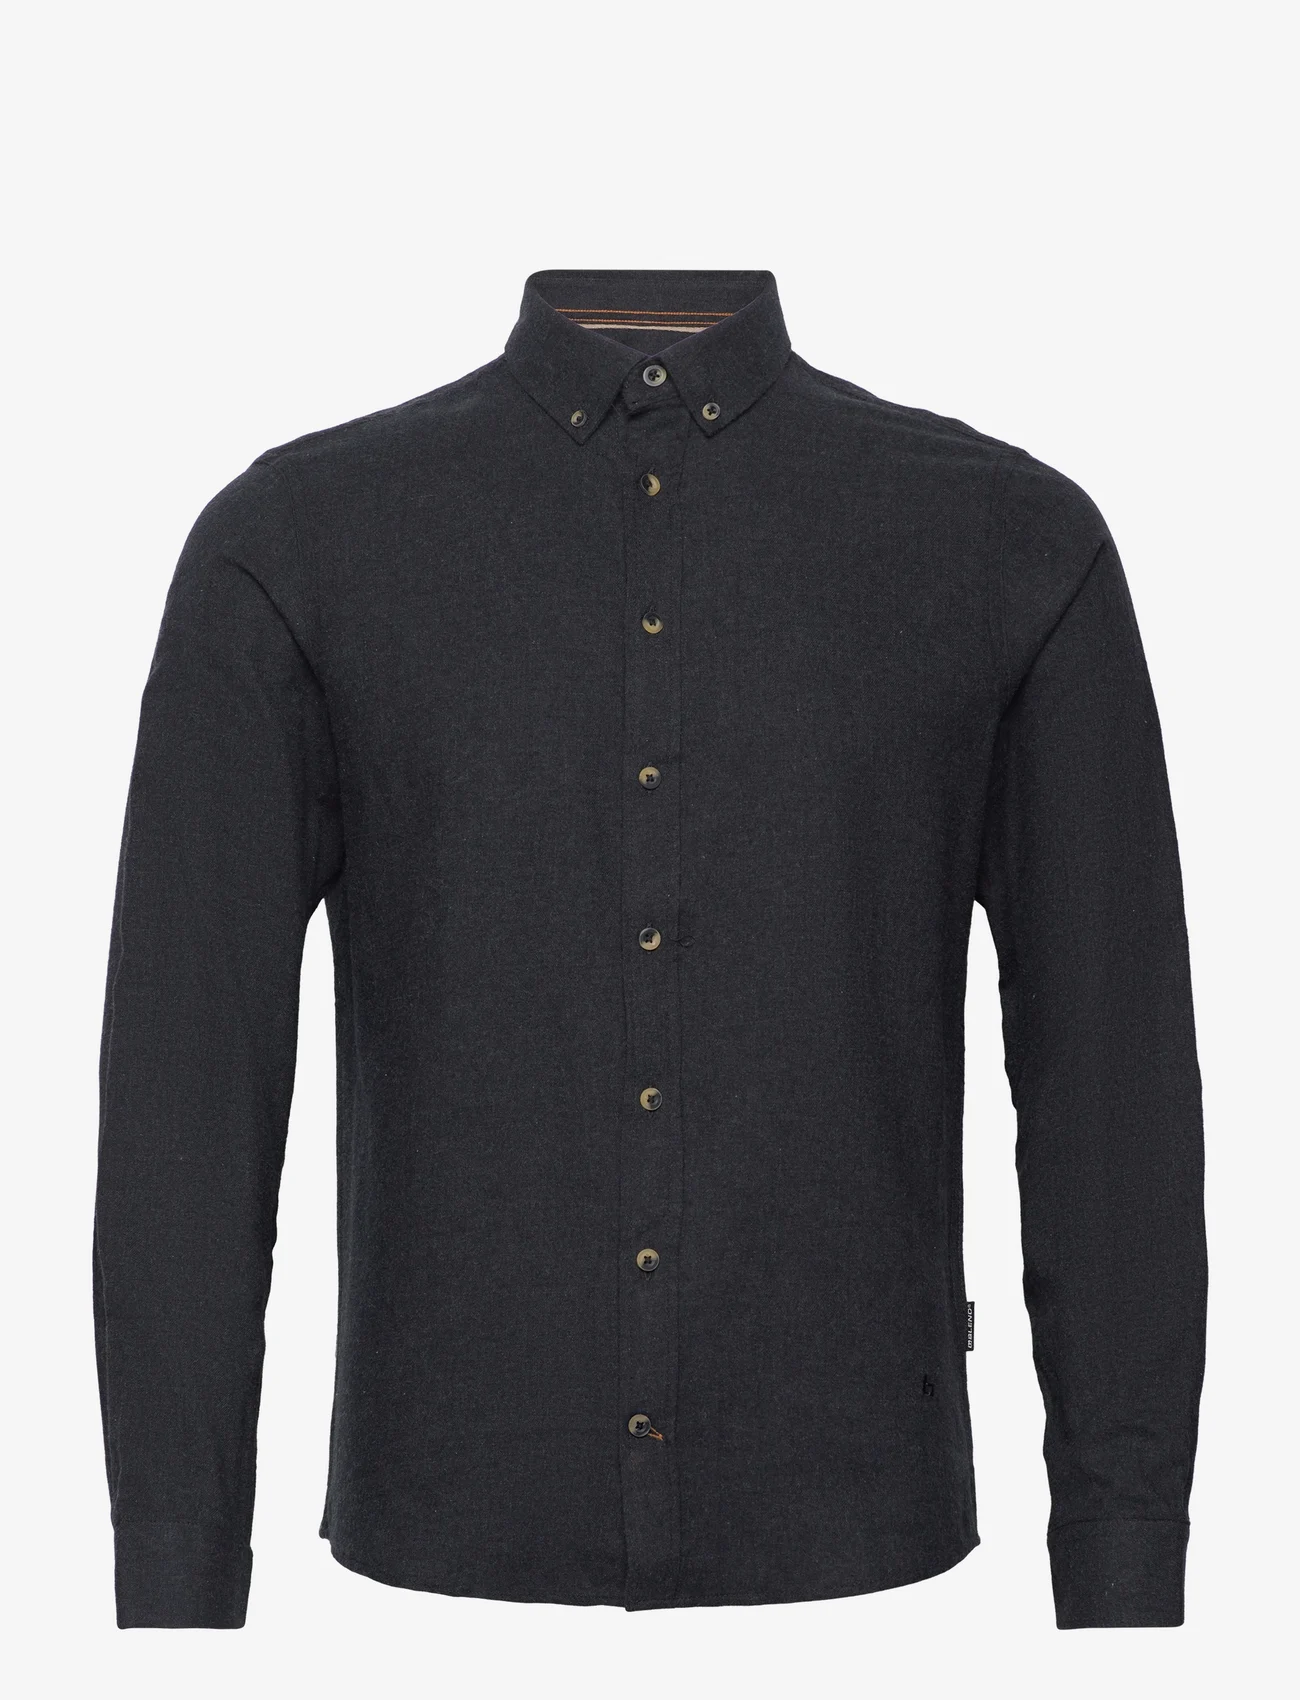 Blend - BHBURLEY shirt - casual shirts - black - 1